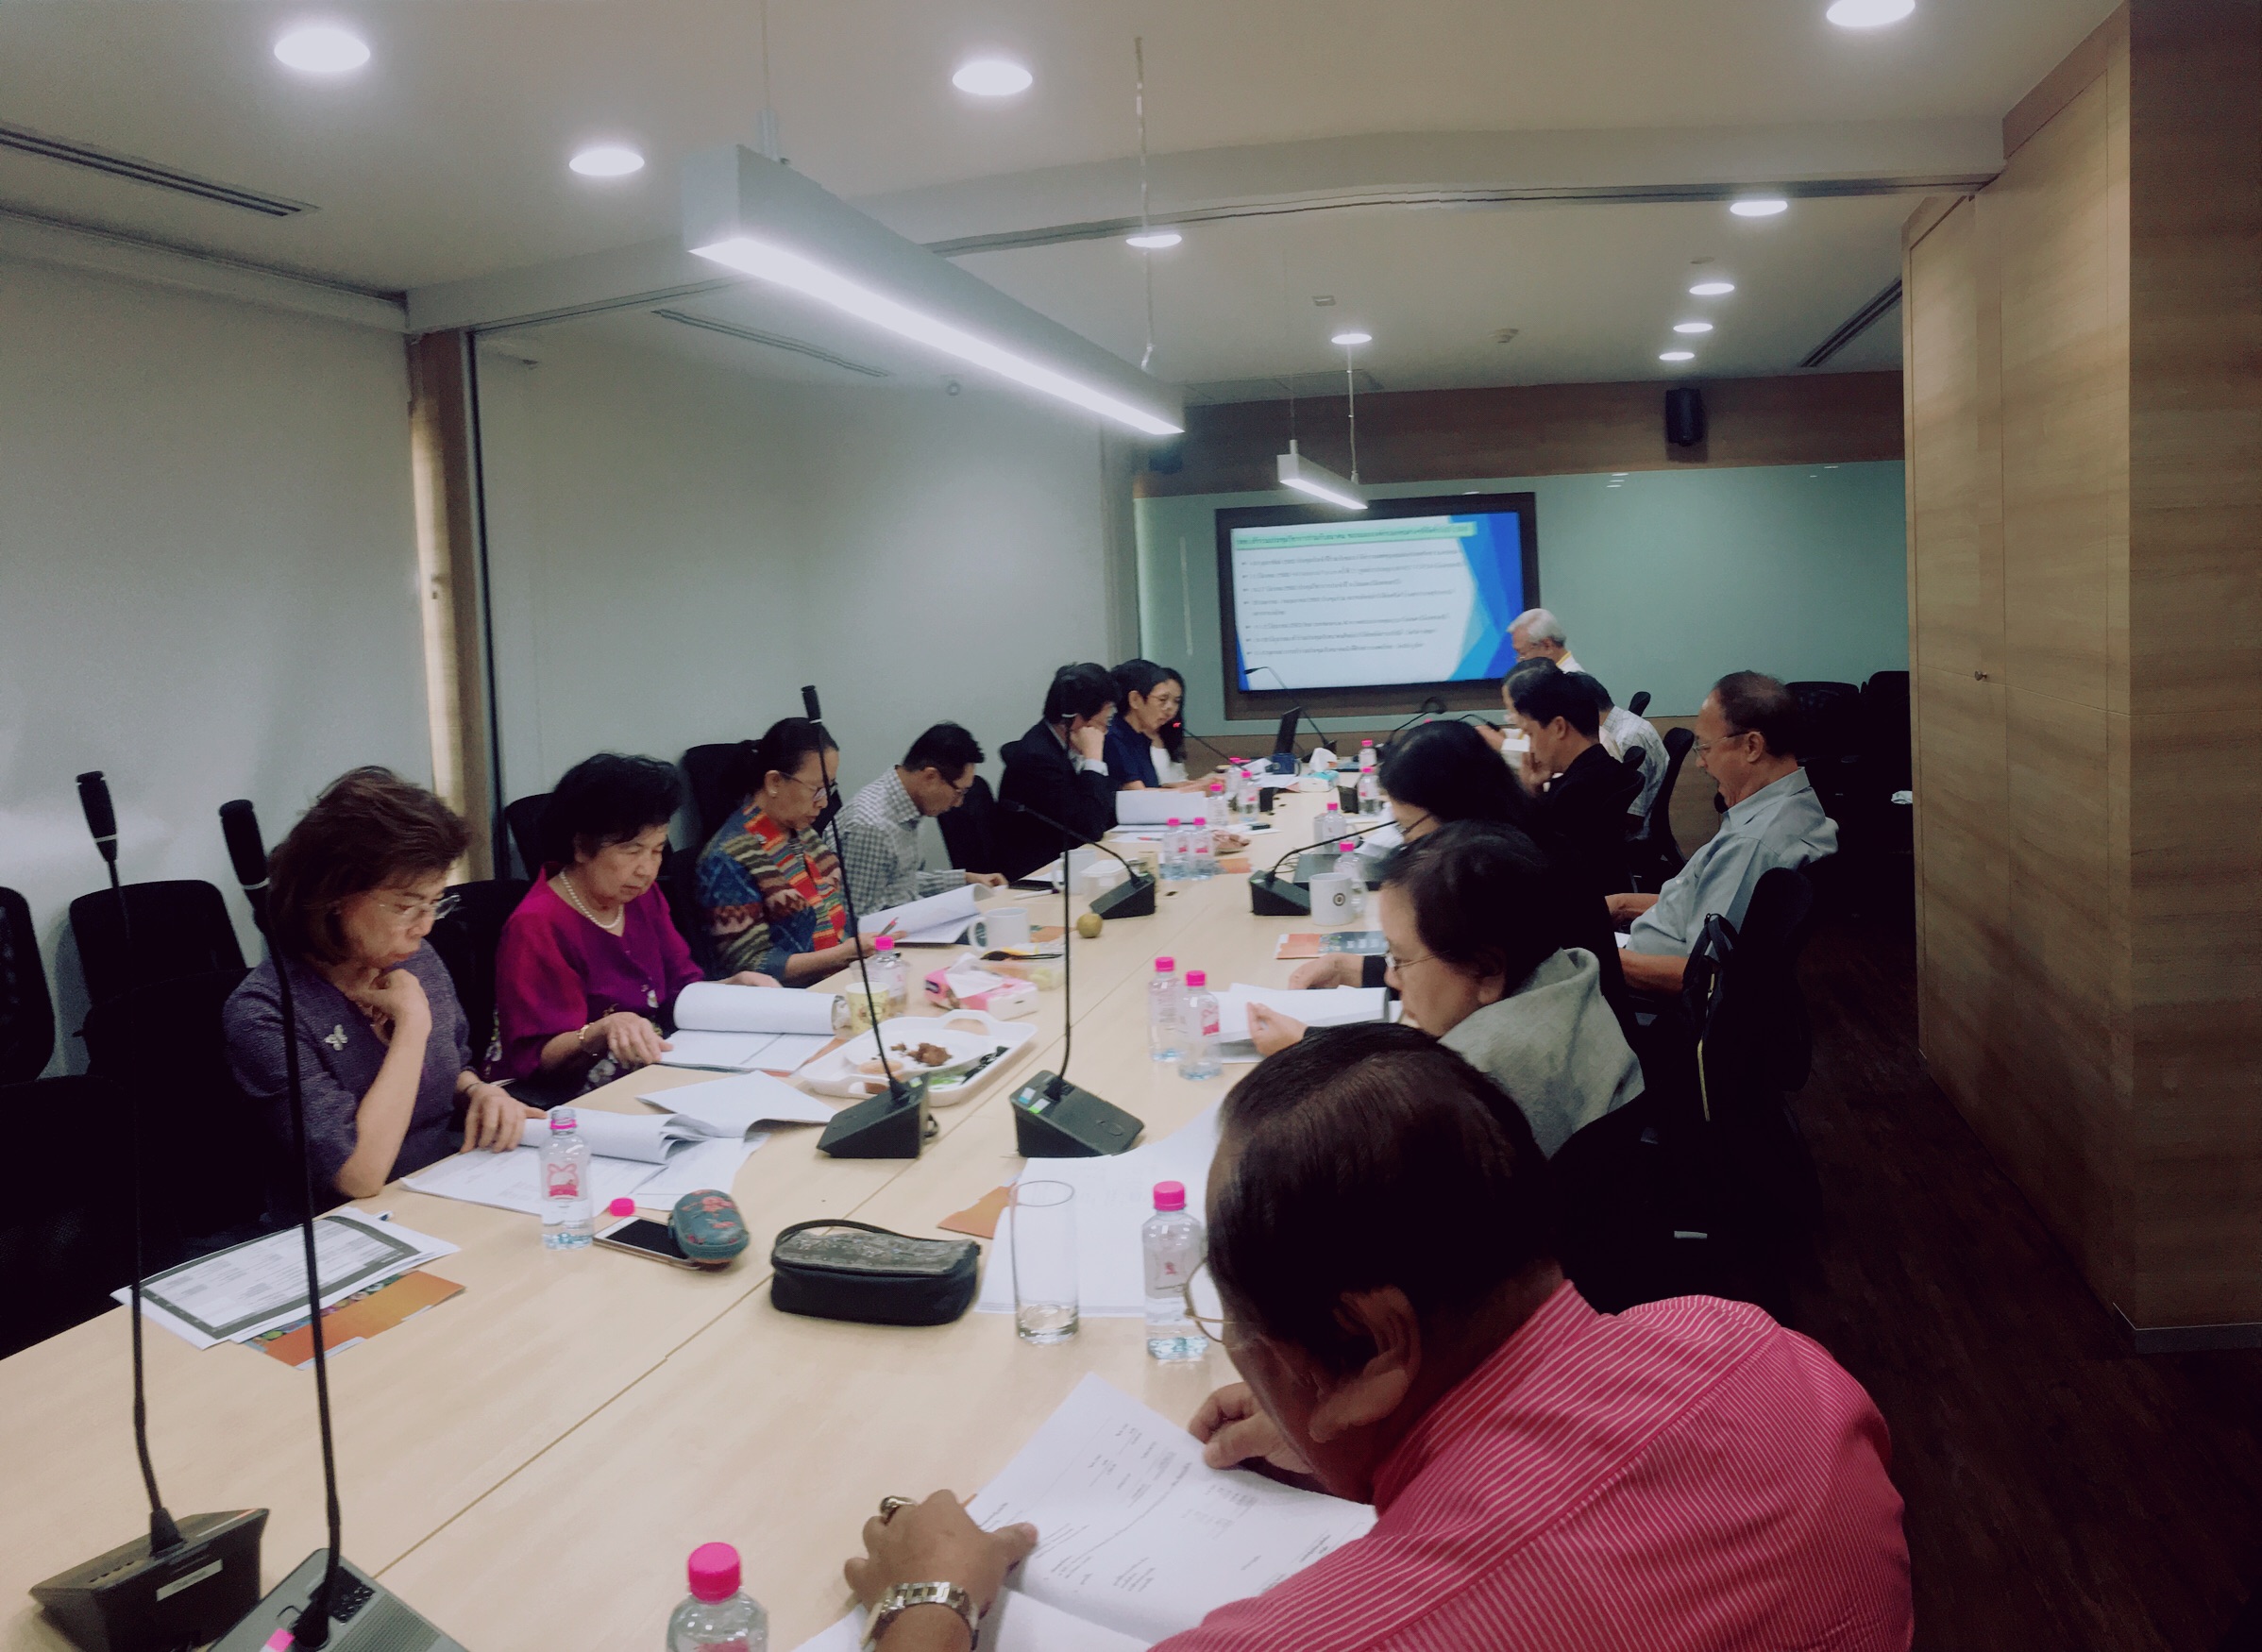 การประชุมคณะกรรมการอำนวยการรังสีวิทยาสมาคมแห่งประเทศไทย ร่วมกับคณะกรรมการกลาง ในวันที่ 20 กุมภาพันธ์ 2563 22